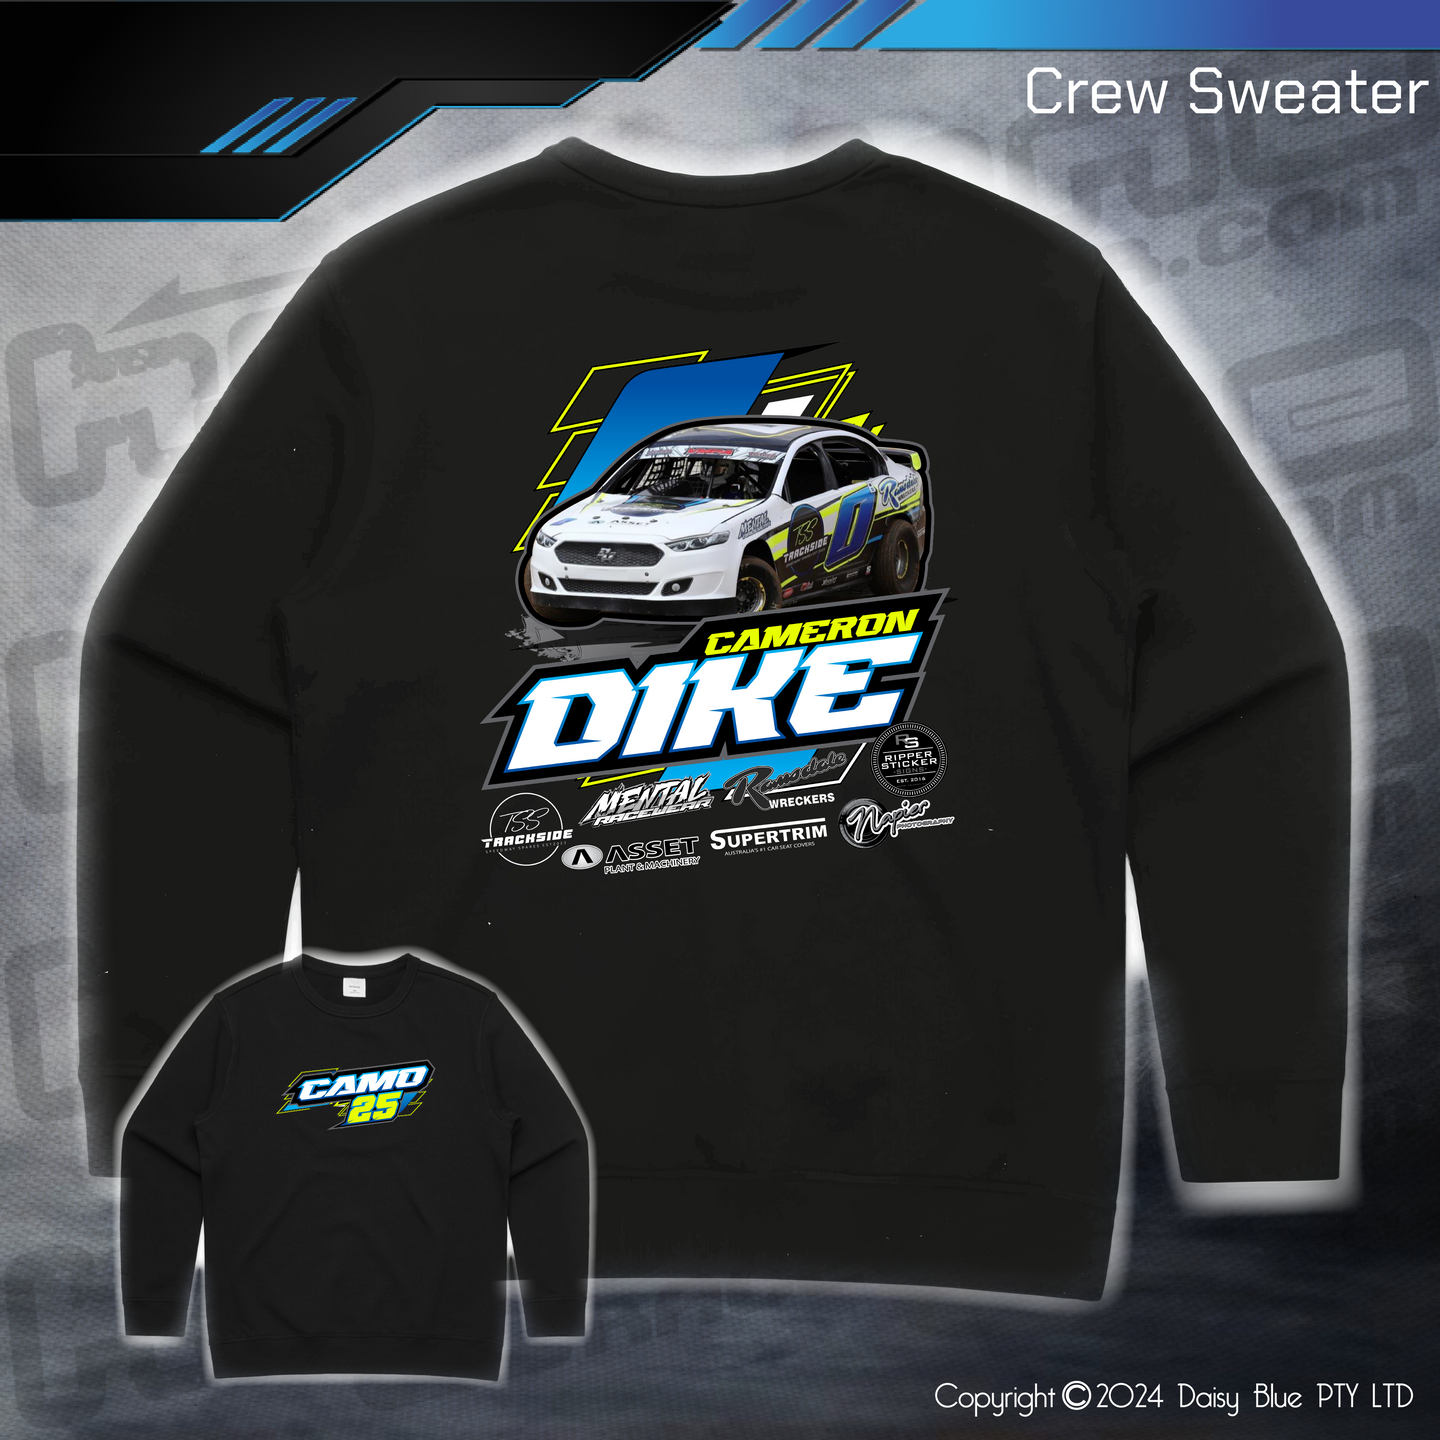 Crew Sweater - Cameron Dike